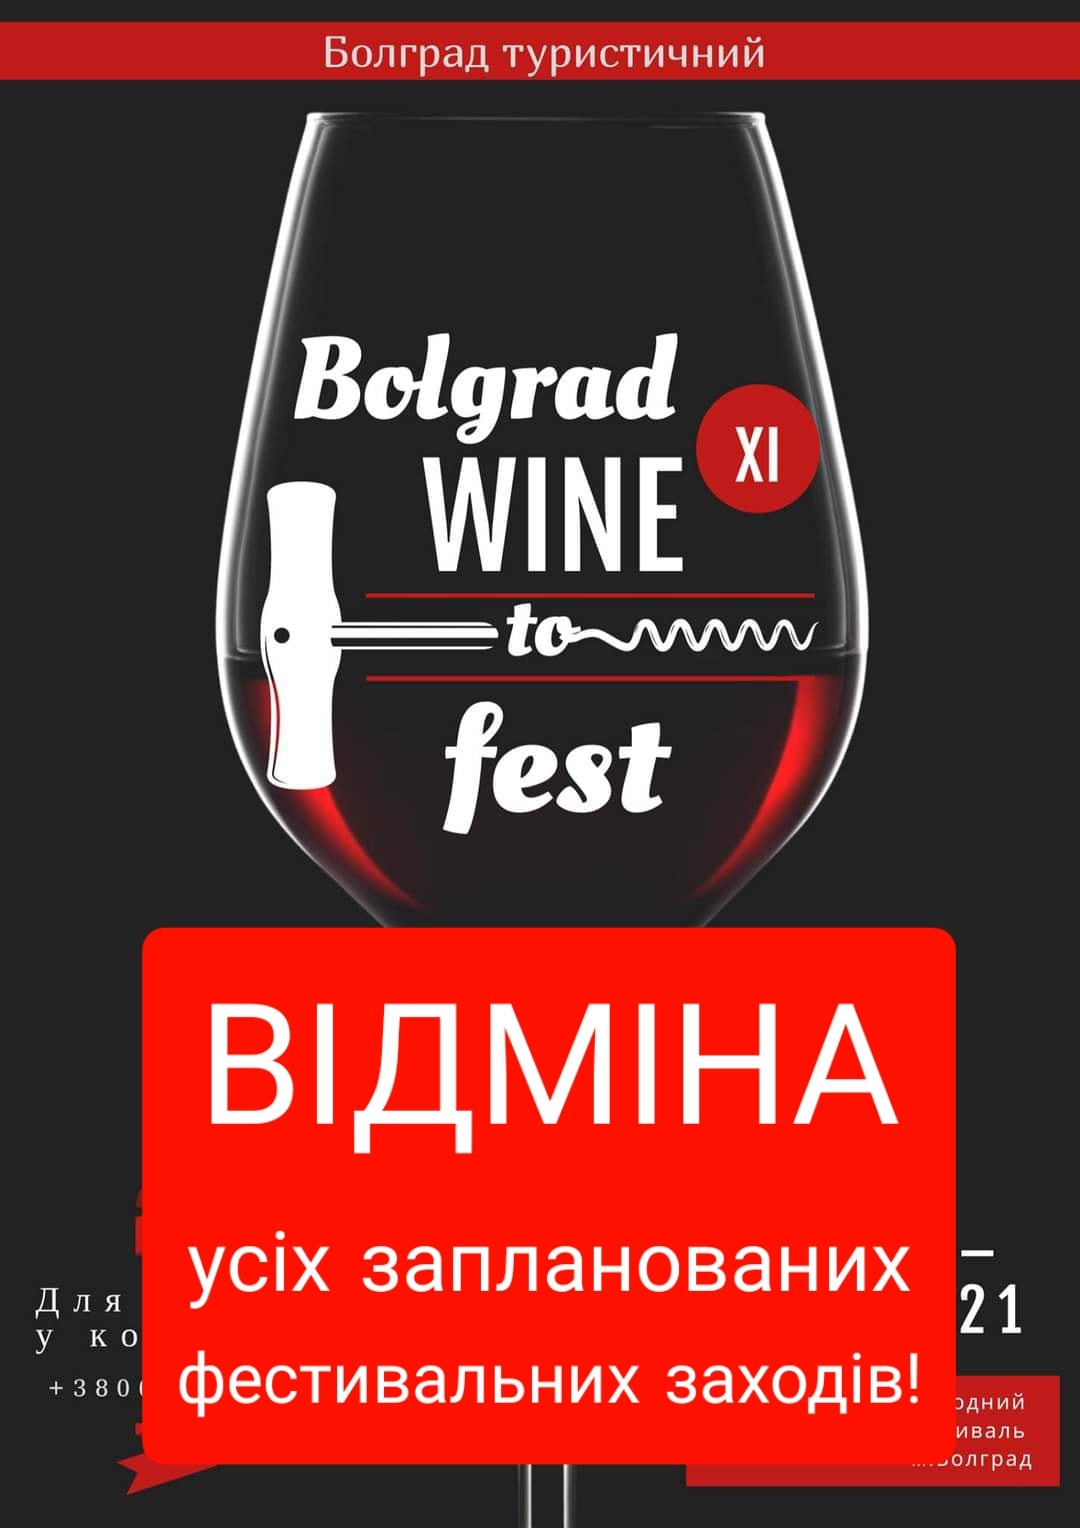 Международный фестиваль "BOLGRAD WINE FEST 2021" не состоится. Дегустационная комиссия также не будет работать